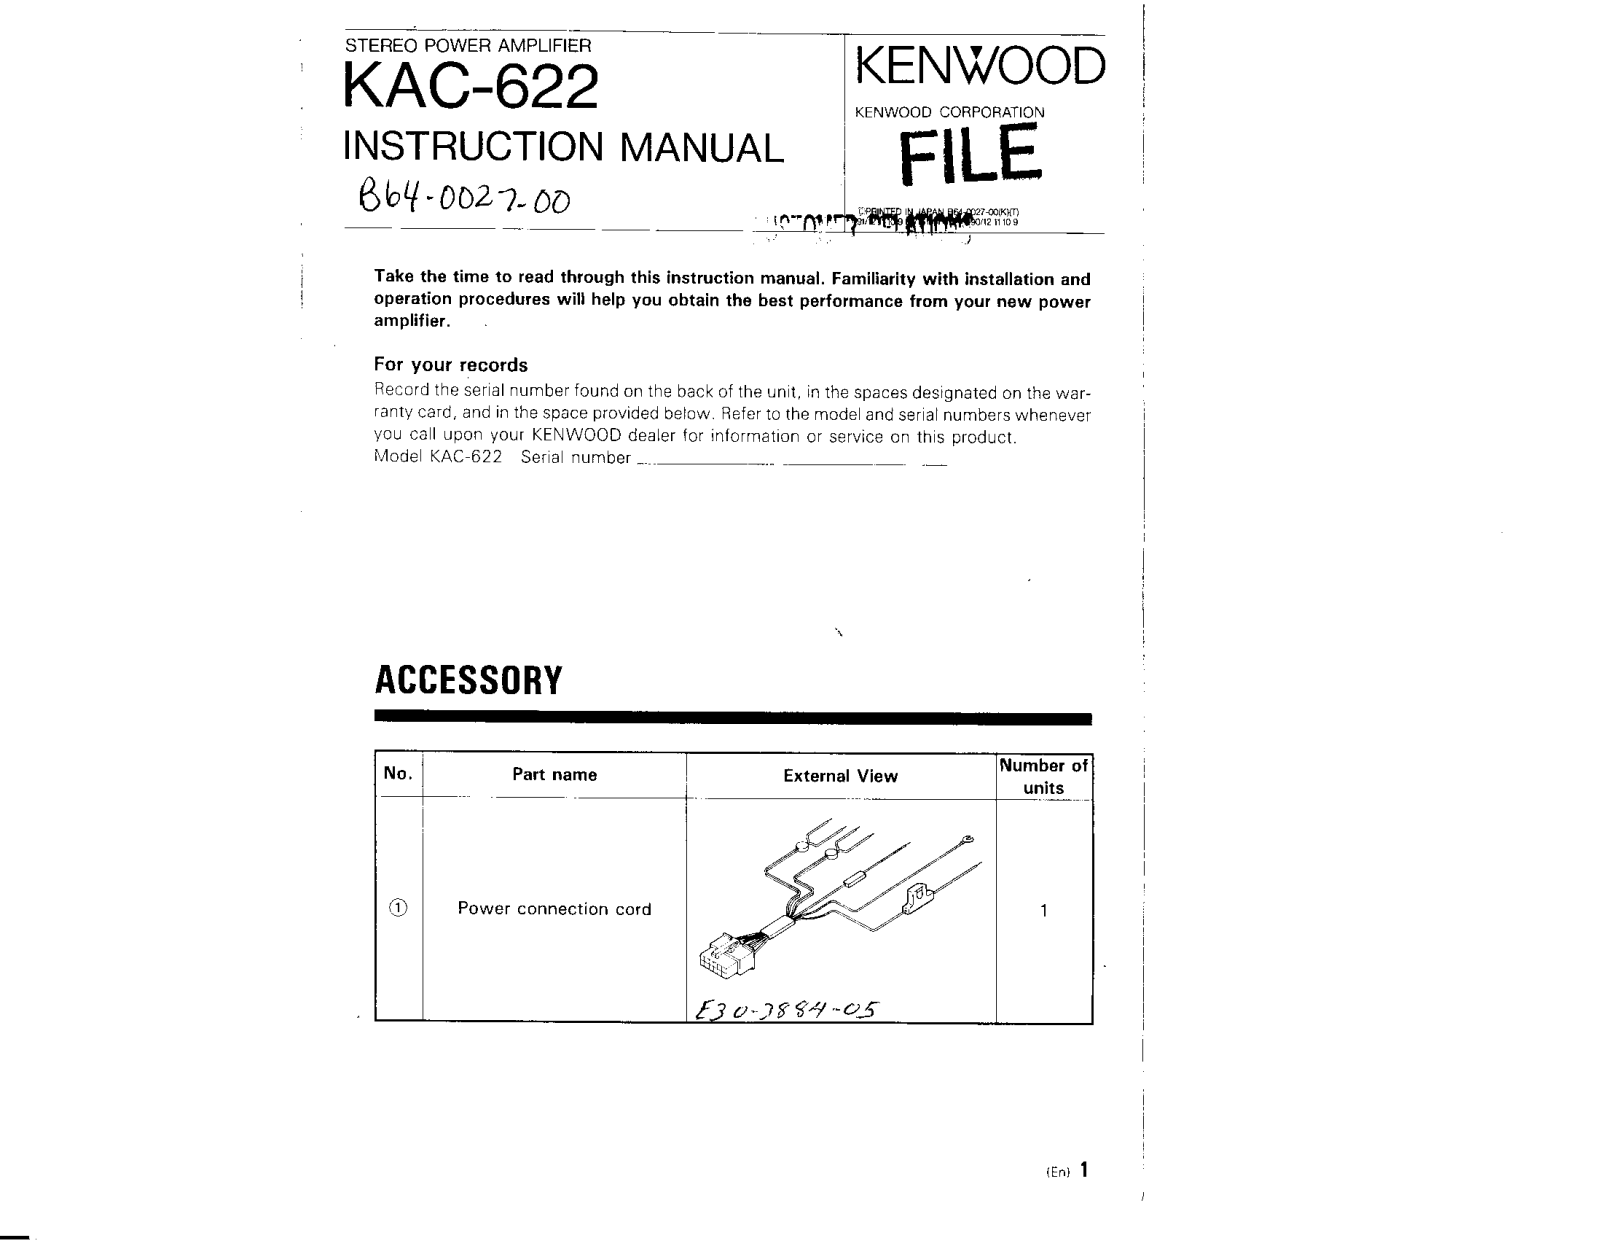 Kenwood KAC-622 Owner's Manual